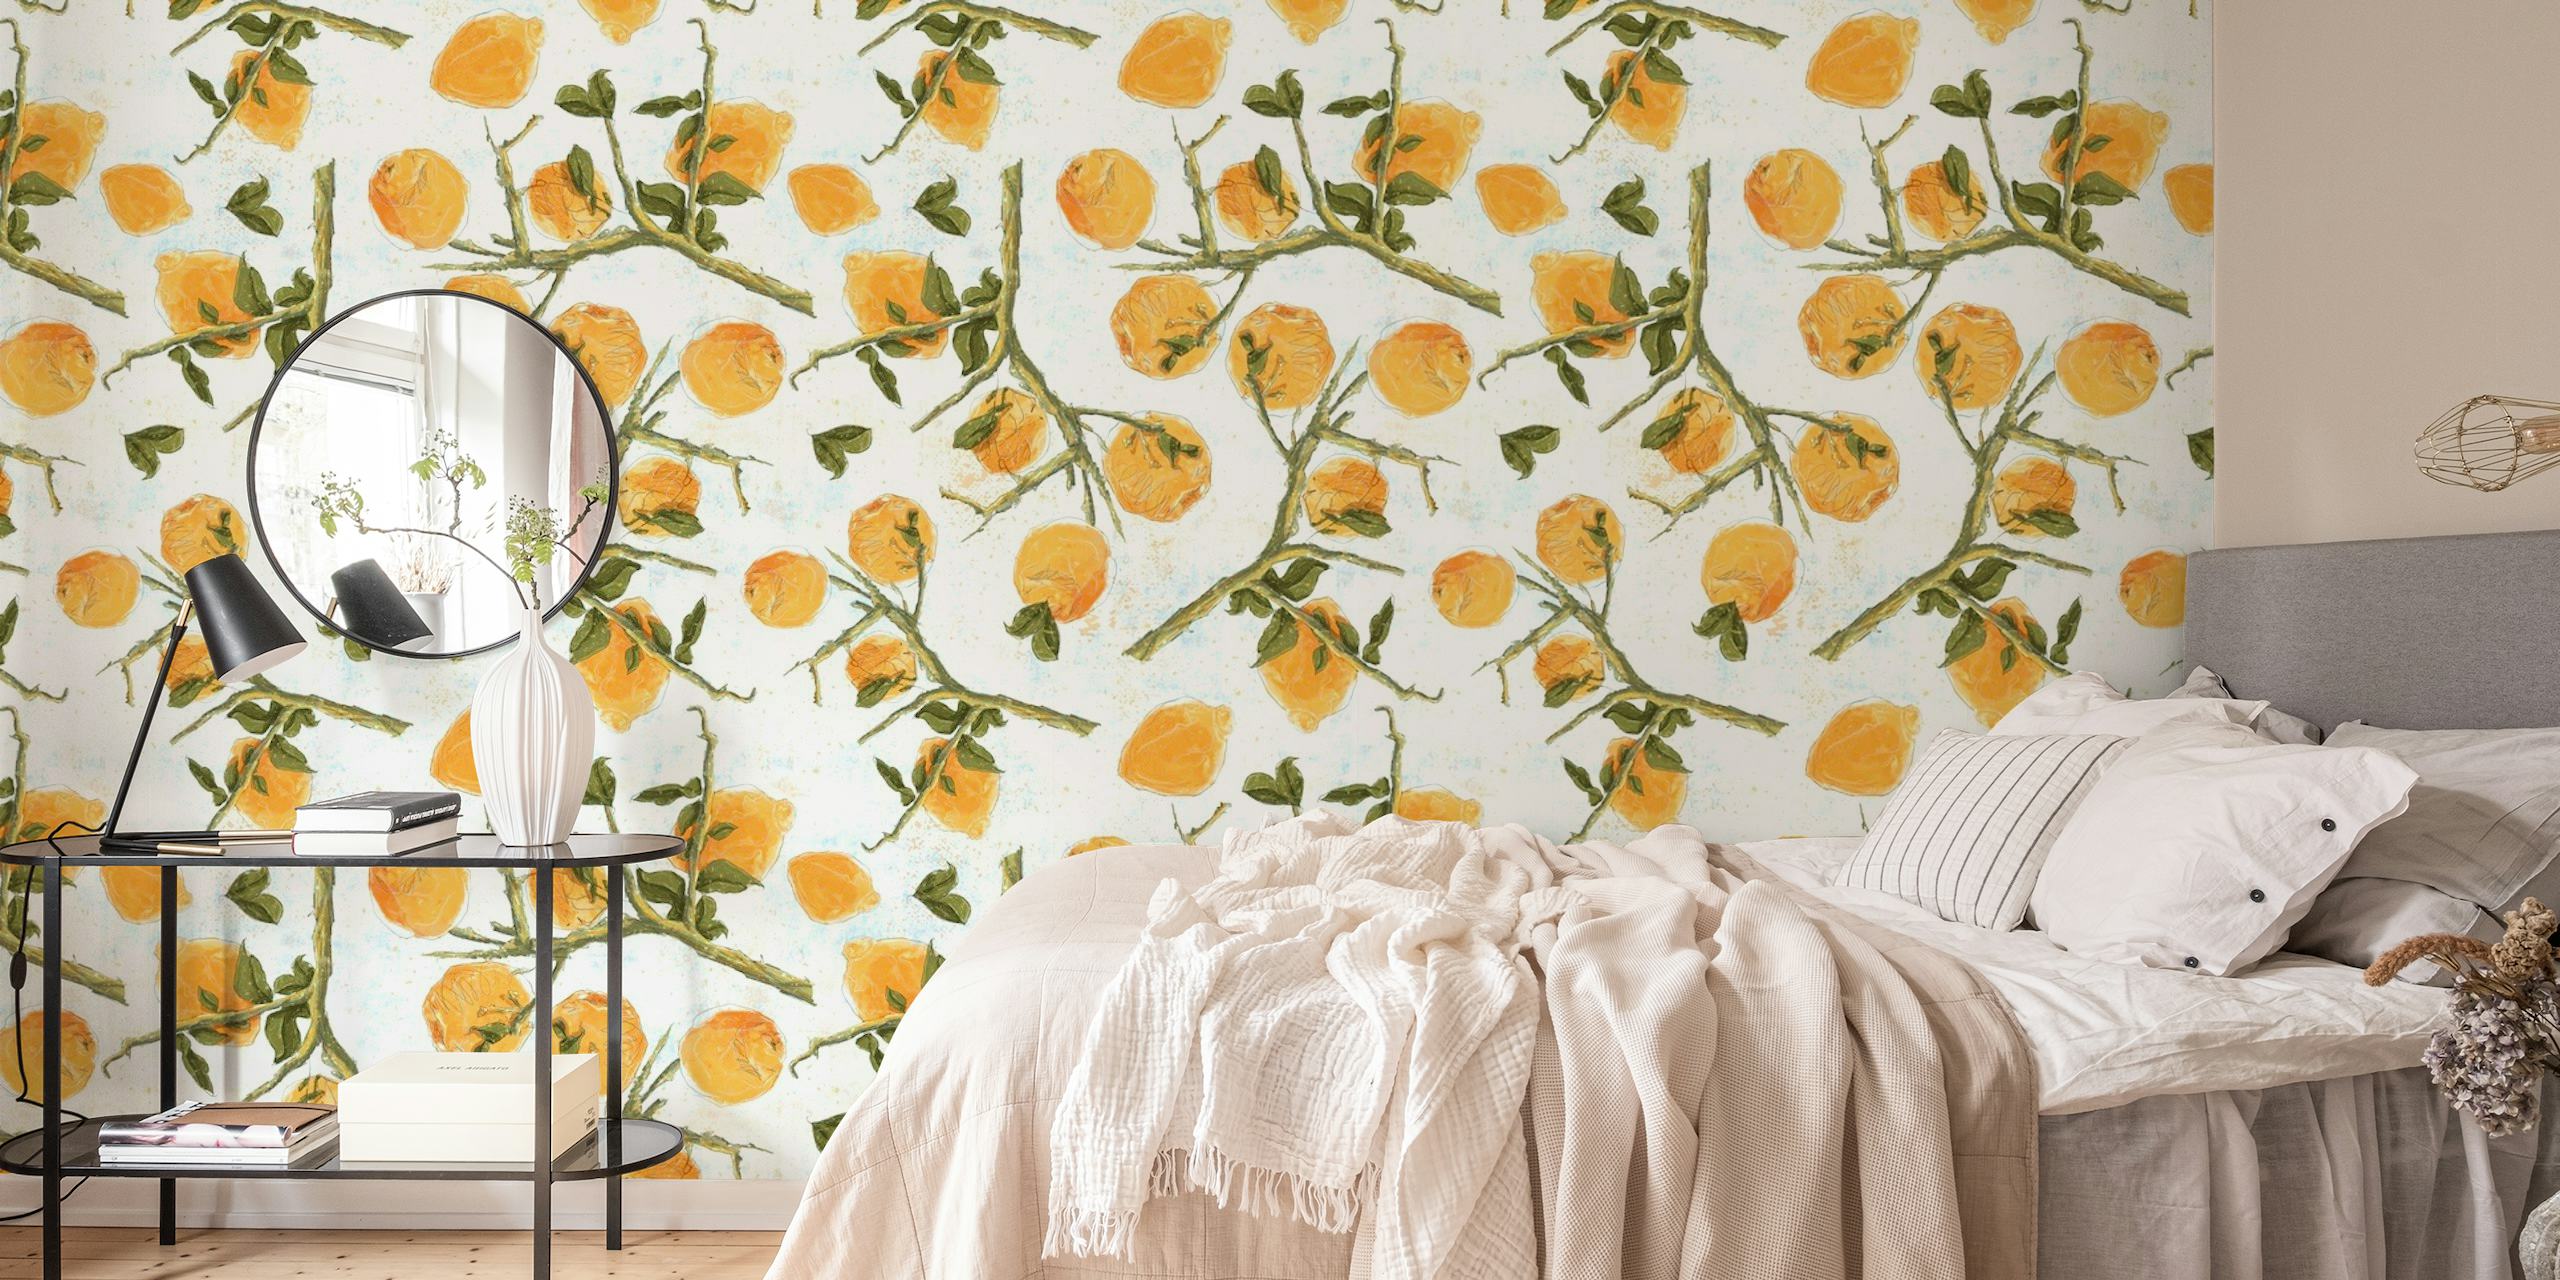 Fototapete „Zitronen auf Weiß“ mit illustrierten Zitrusfrüchten und grünen Blättern